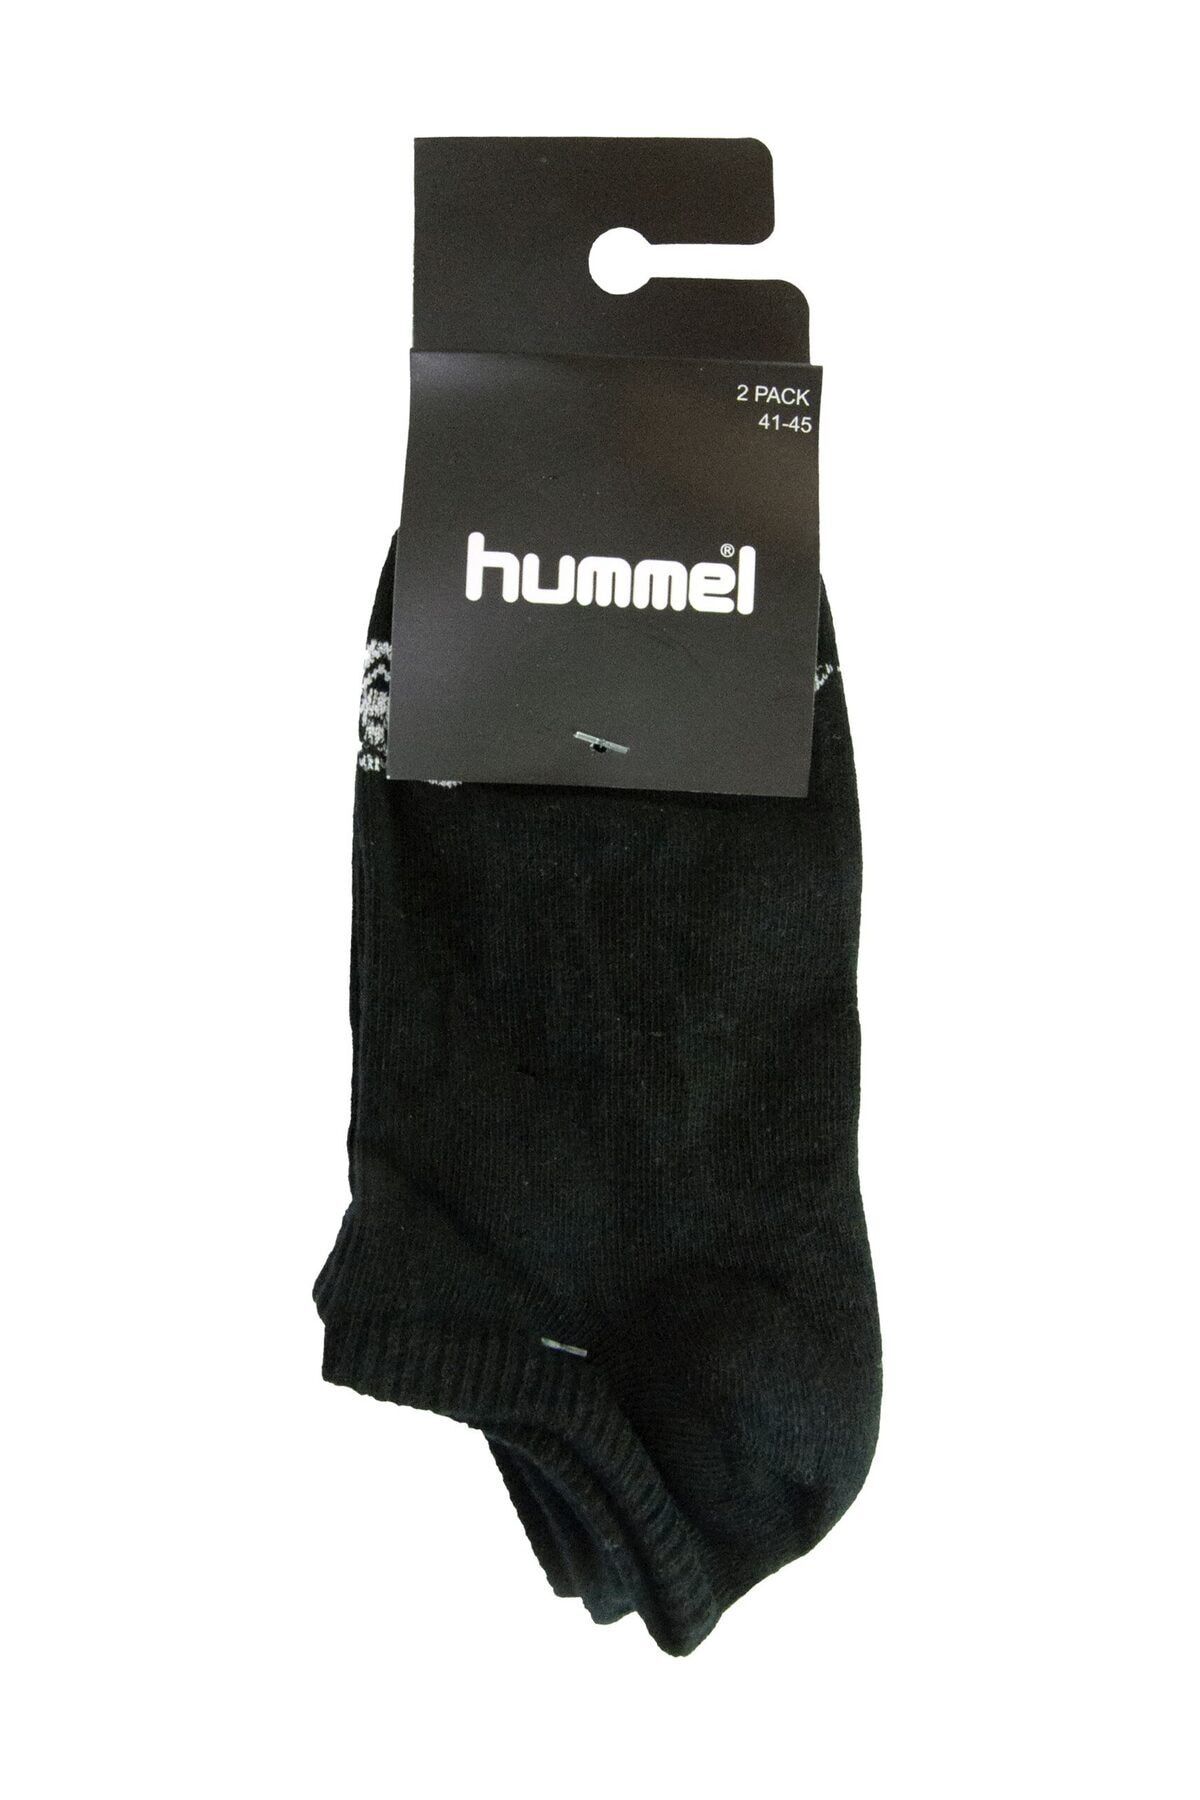 hummel Unisex Spor Çorap - Hmlmini New 2Pk Socks